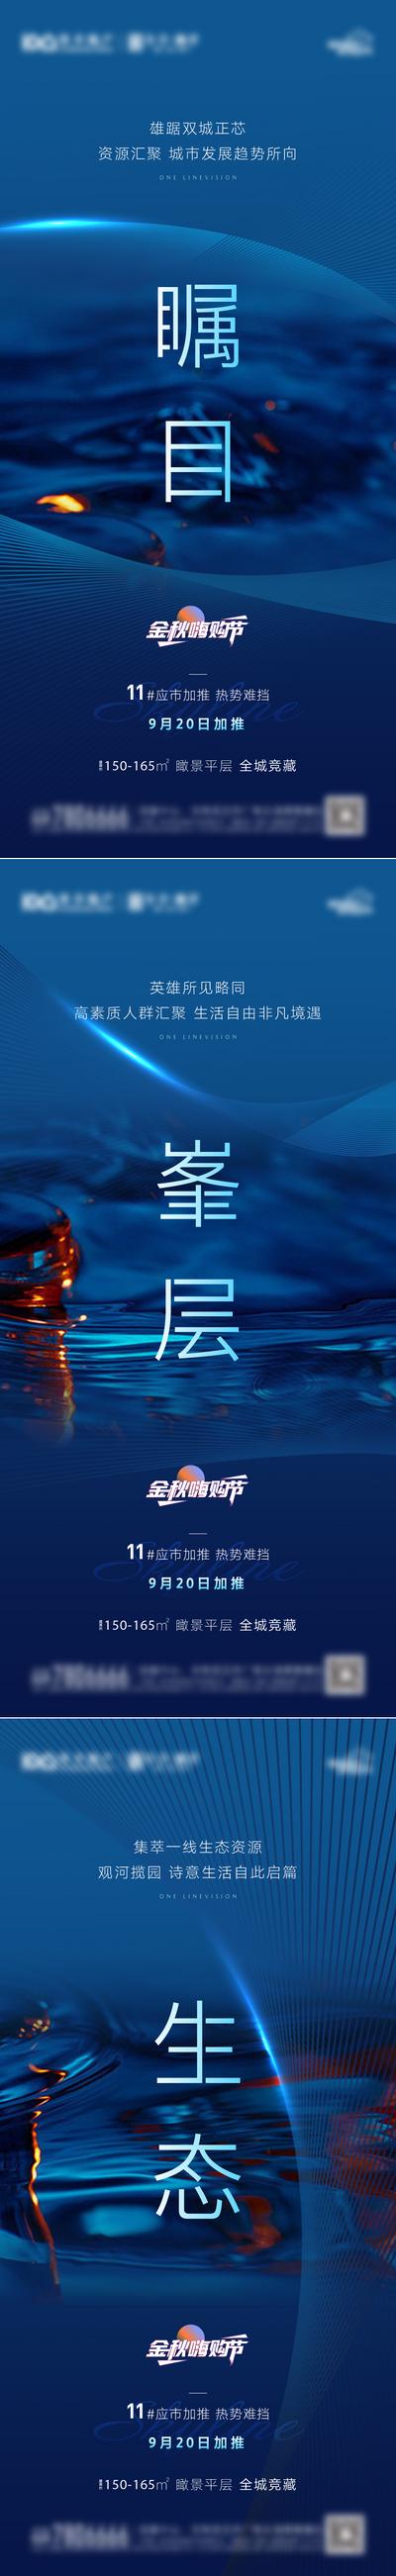 南门网 广告 海报 地产 悬念 开盘 系列 水系 蓝色 加推 认筹 新品 预告